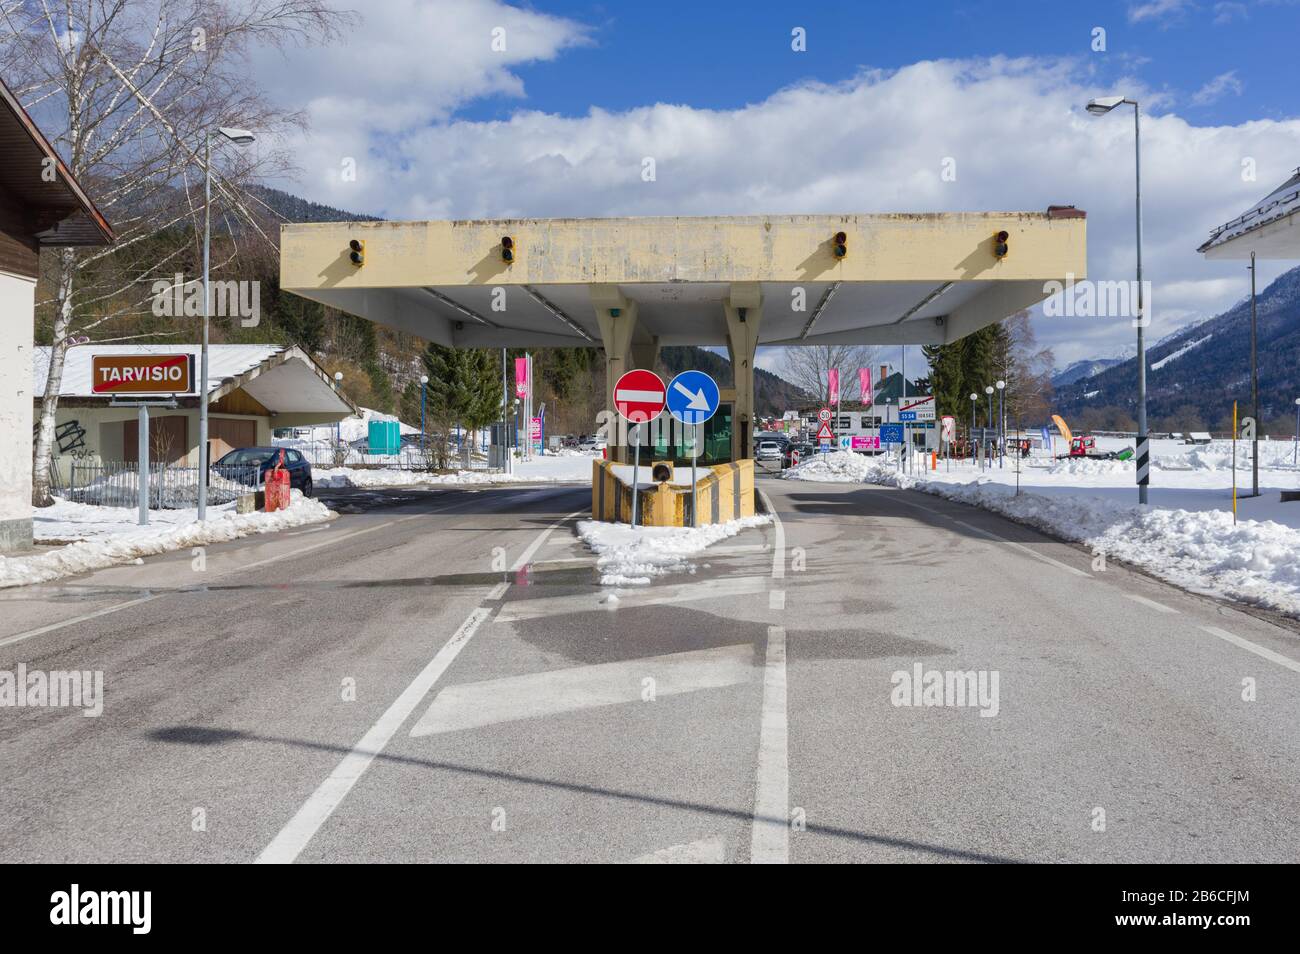 Tarvisio, Italien (8. März 2020) - Die italienische Seite der Grenze zwischen Slowenien und Italien bei Fusine (Tarvisio) Stockfoto